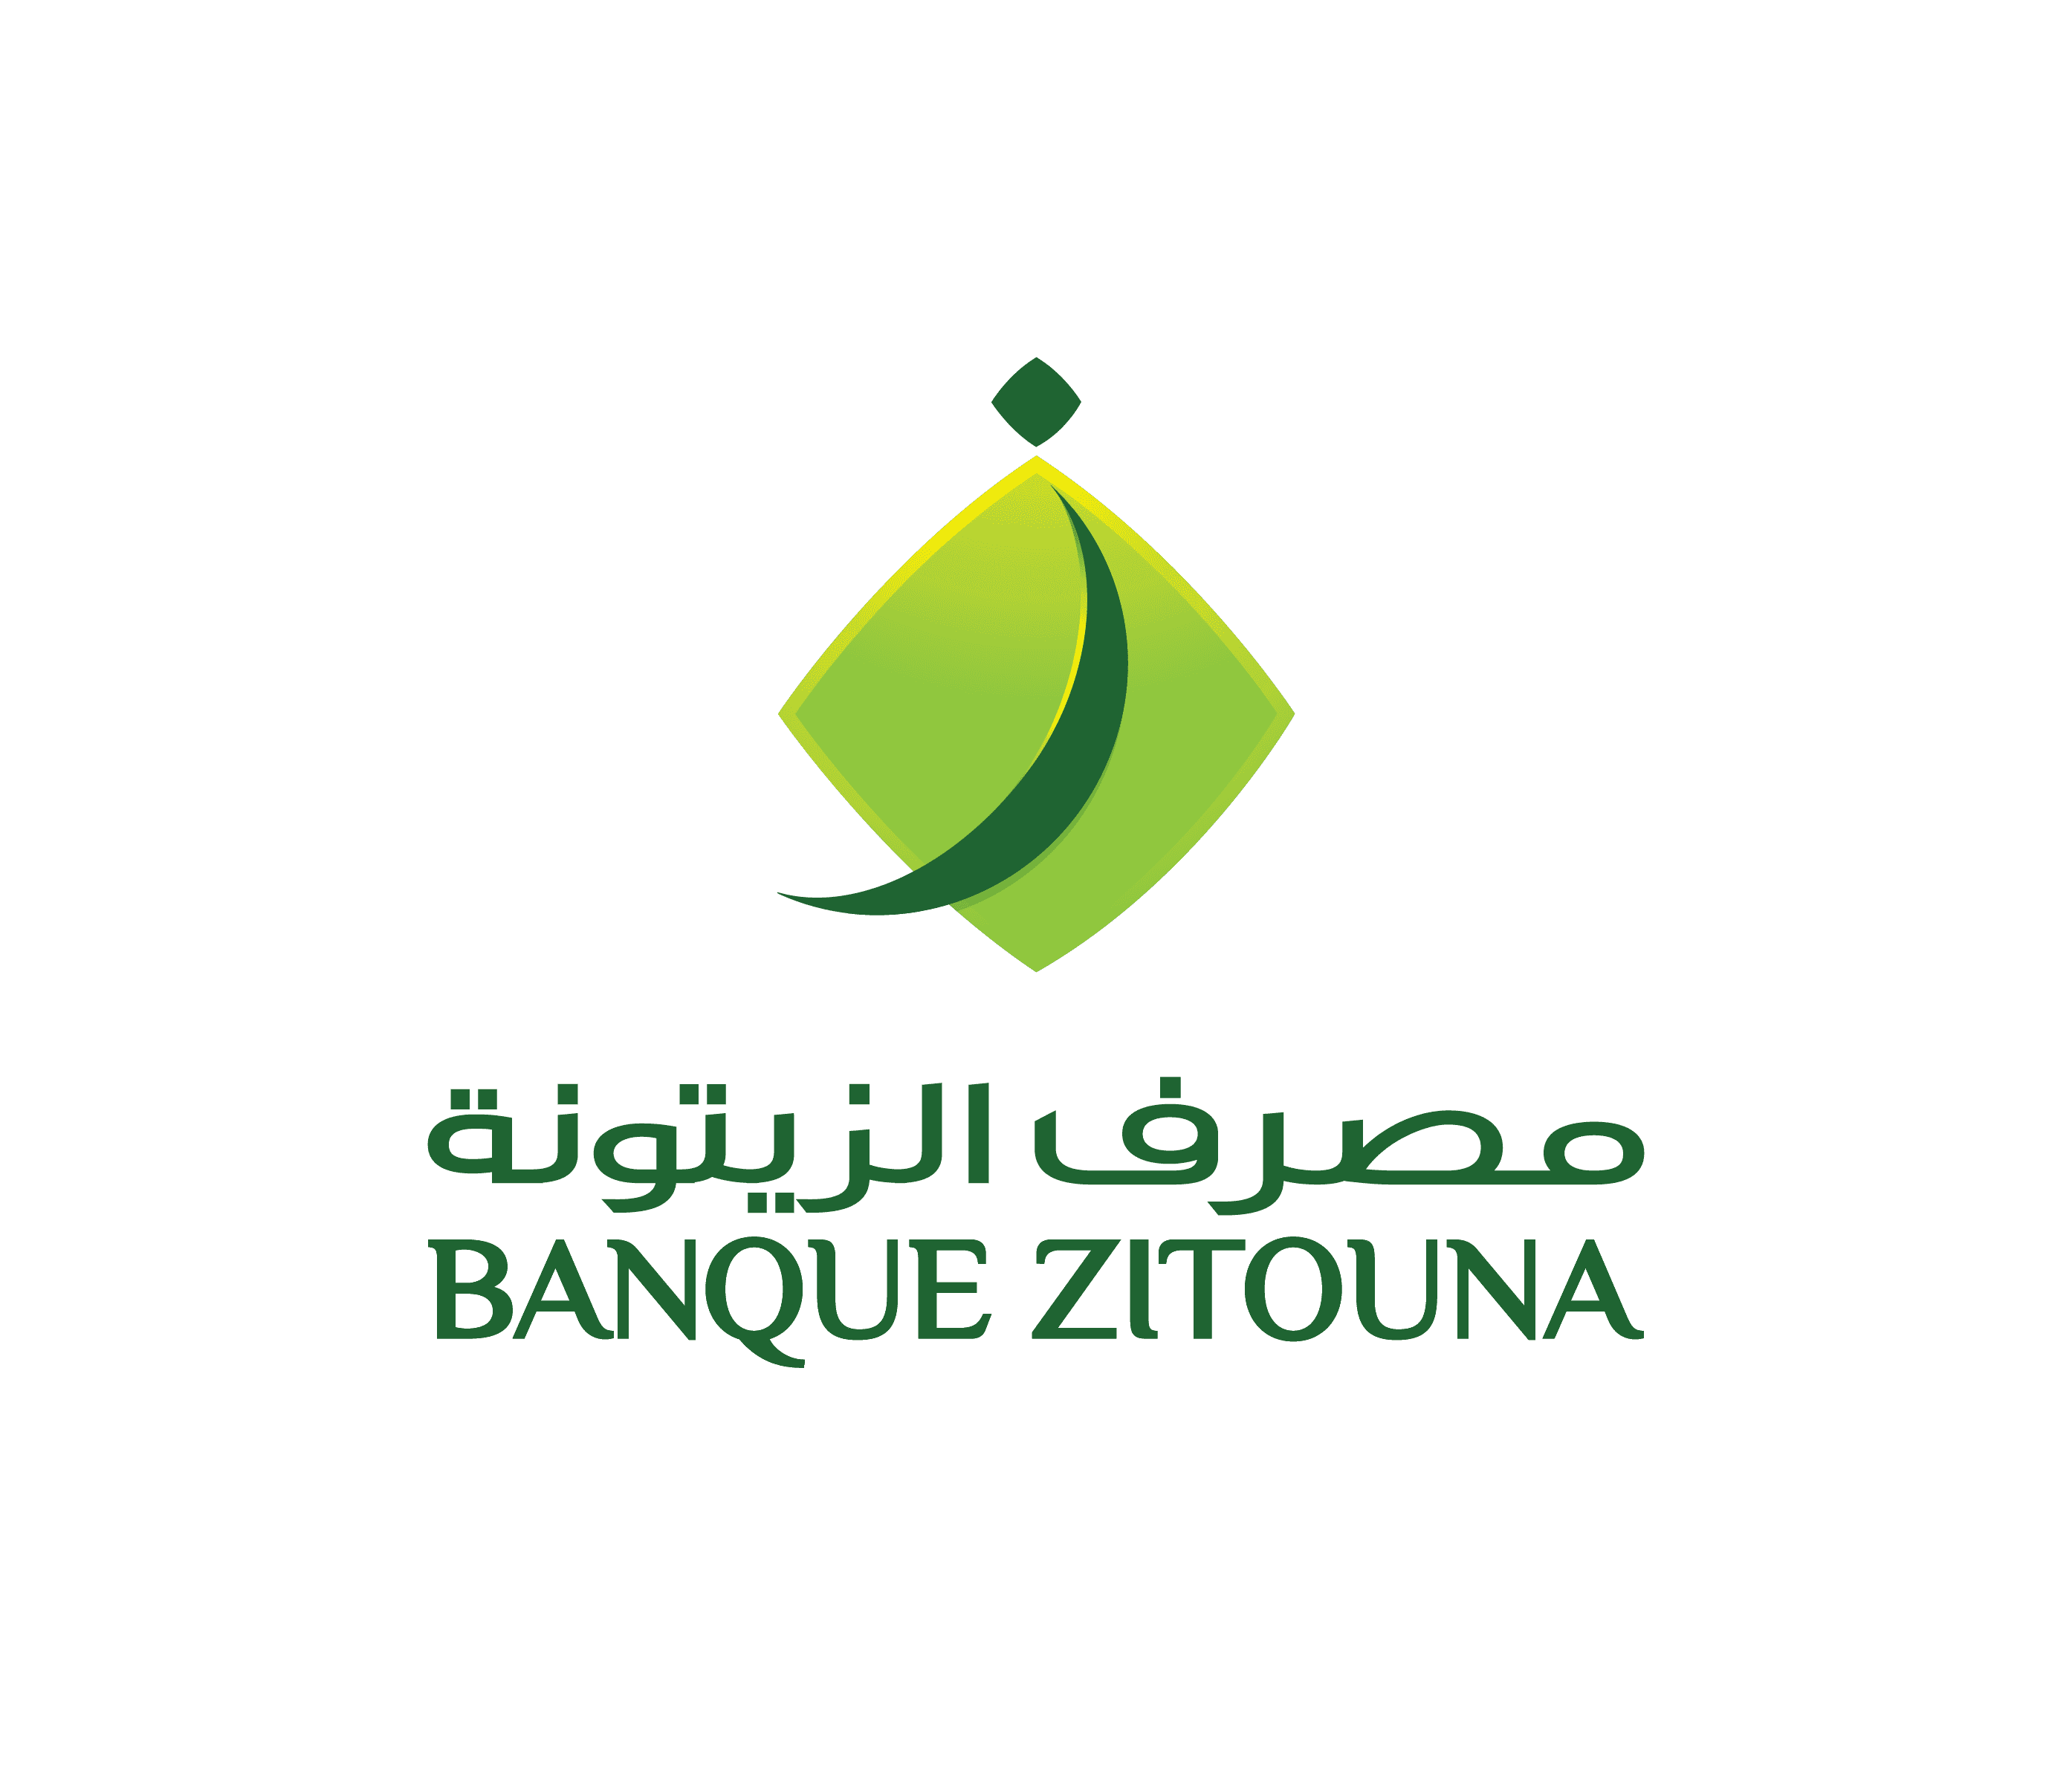 Banque-Zitouna-Logo